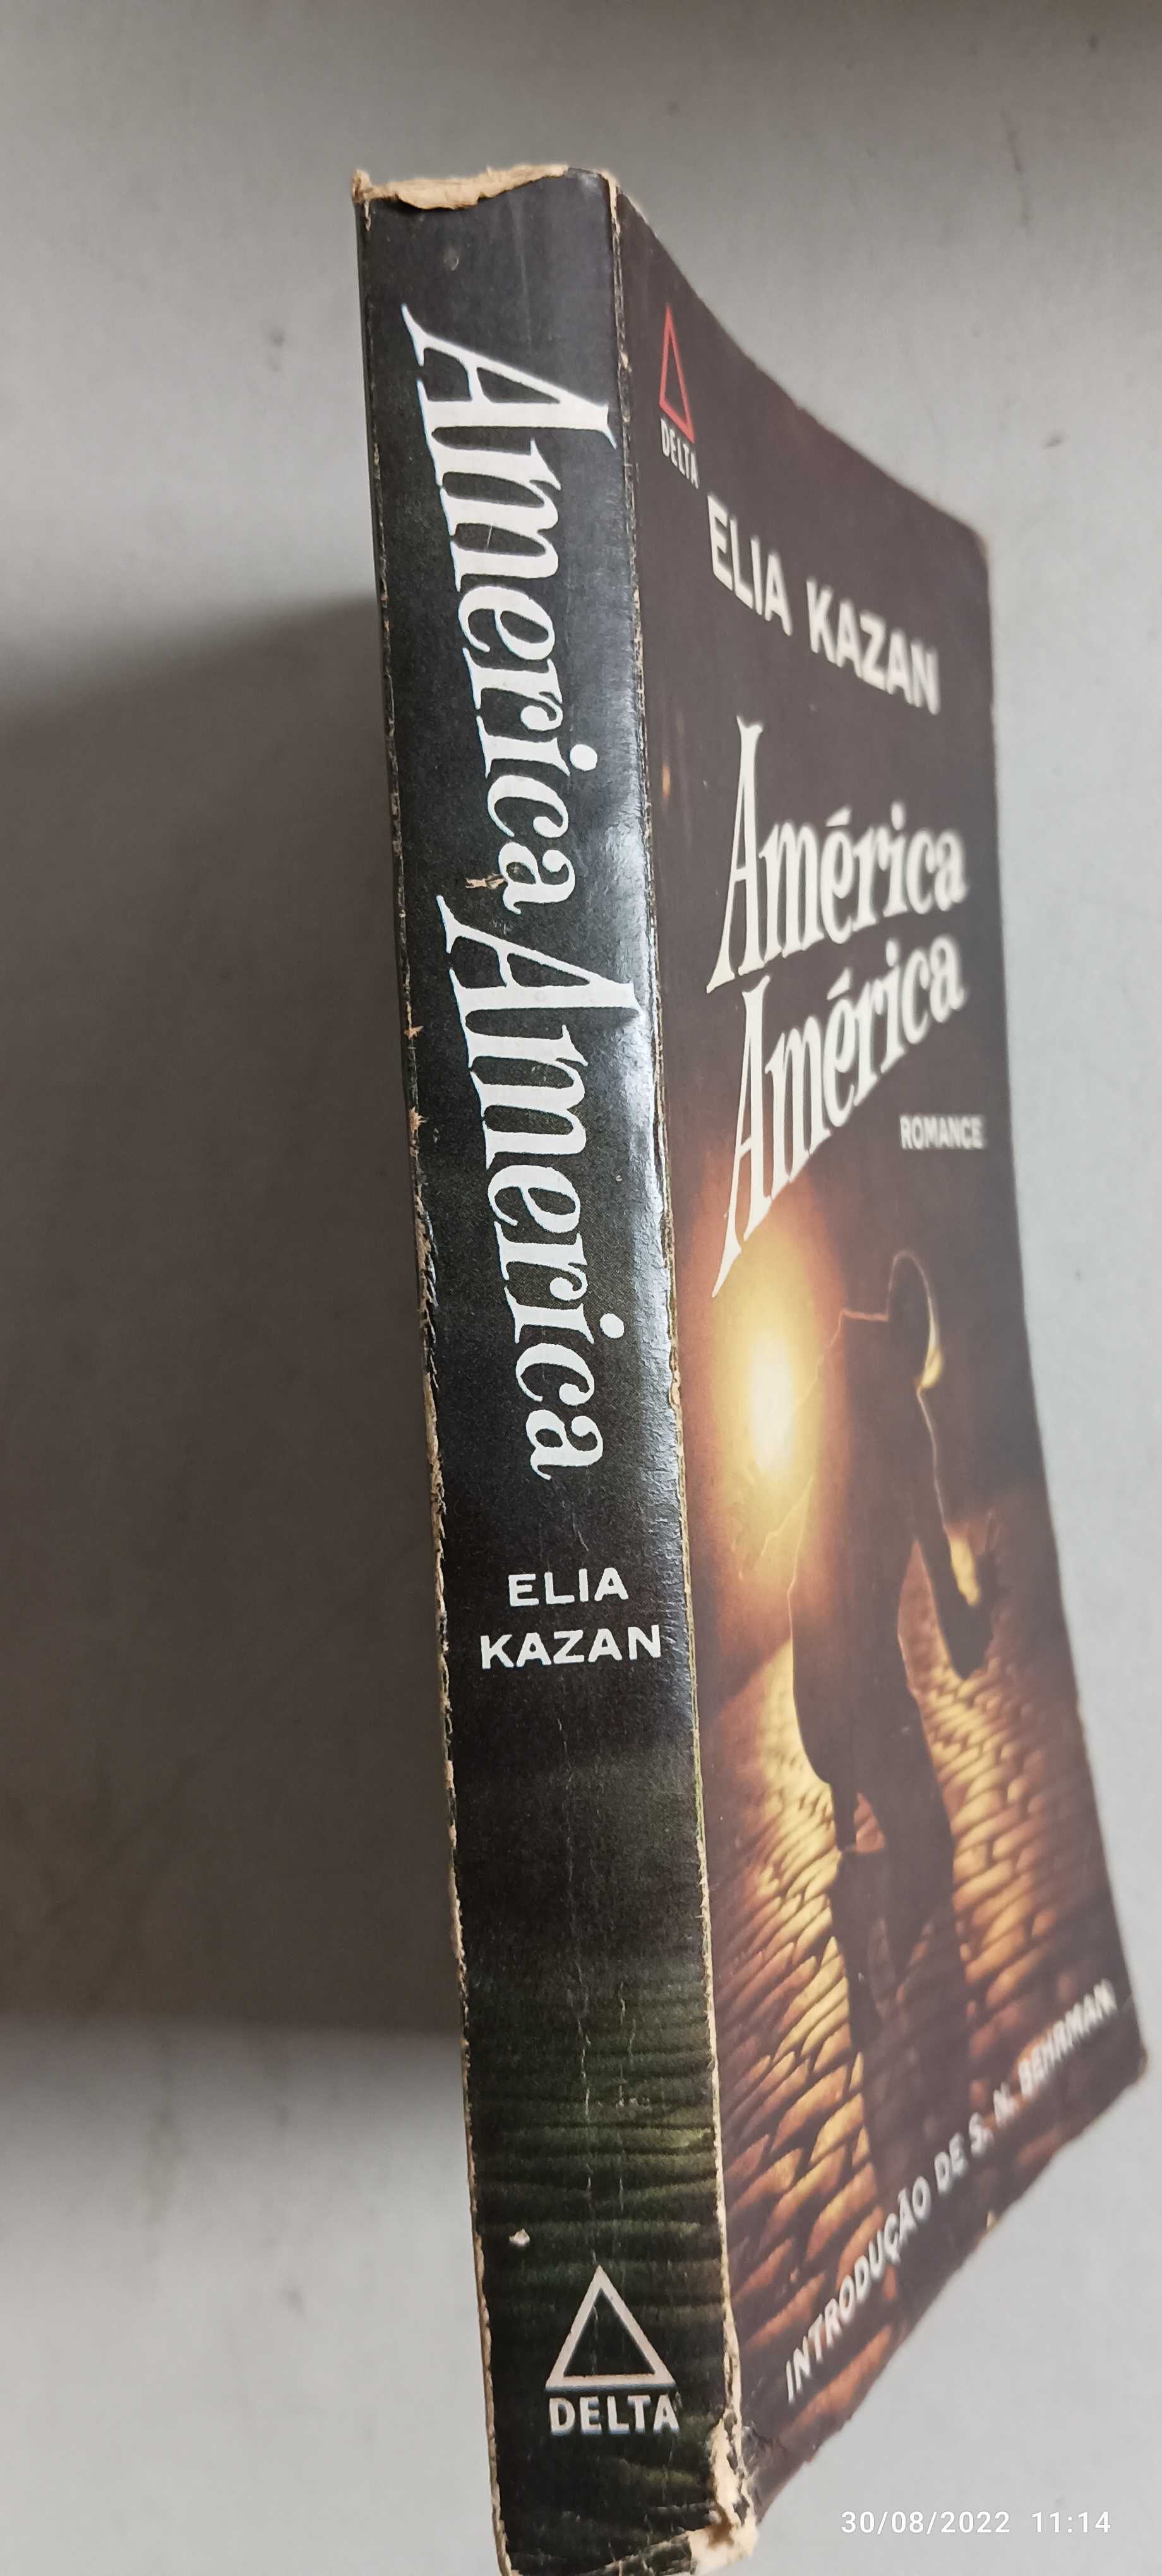 Livro Pa-1 - Elia Kazan - América América